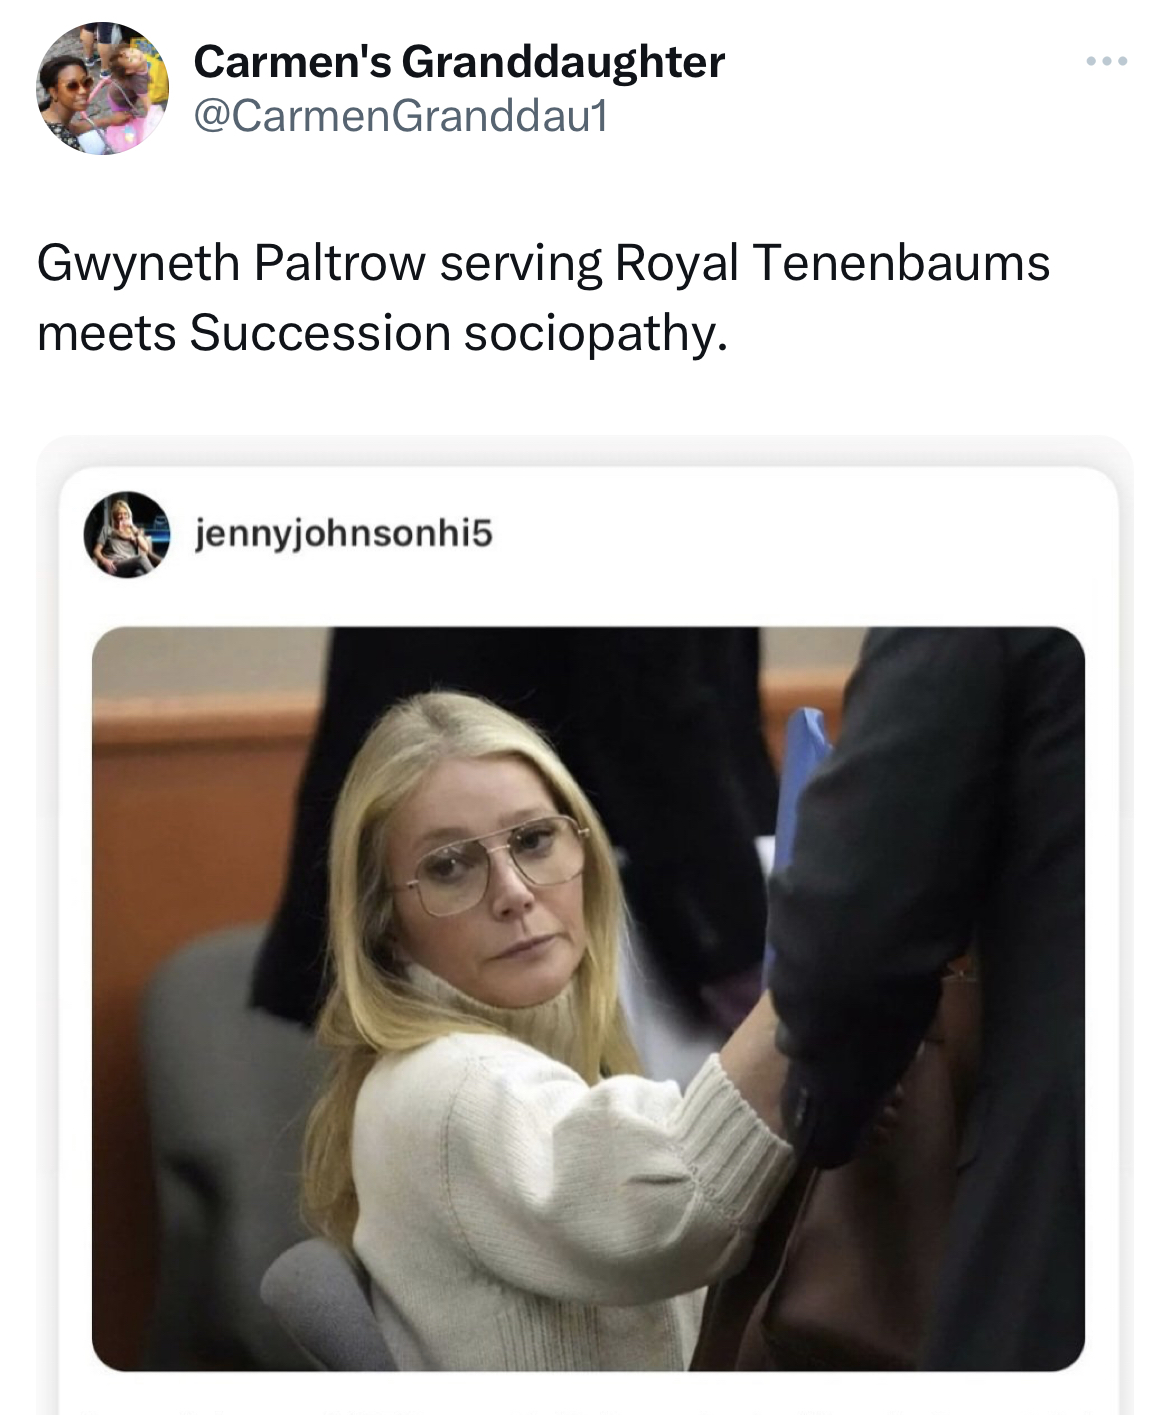 Gwyneth Paltrow Jeffrey Dahmer memes - Gwyneth Paltrow - Carmen's Granddaughter Gwyneth Paltrow serving Royal Tenenbaums meets Succession sociopathy. jennyjohnsonhi5